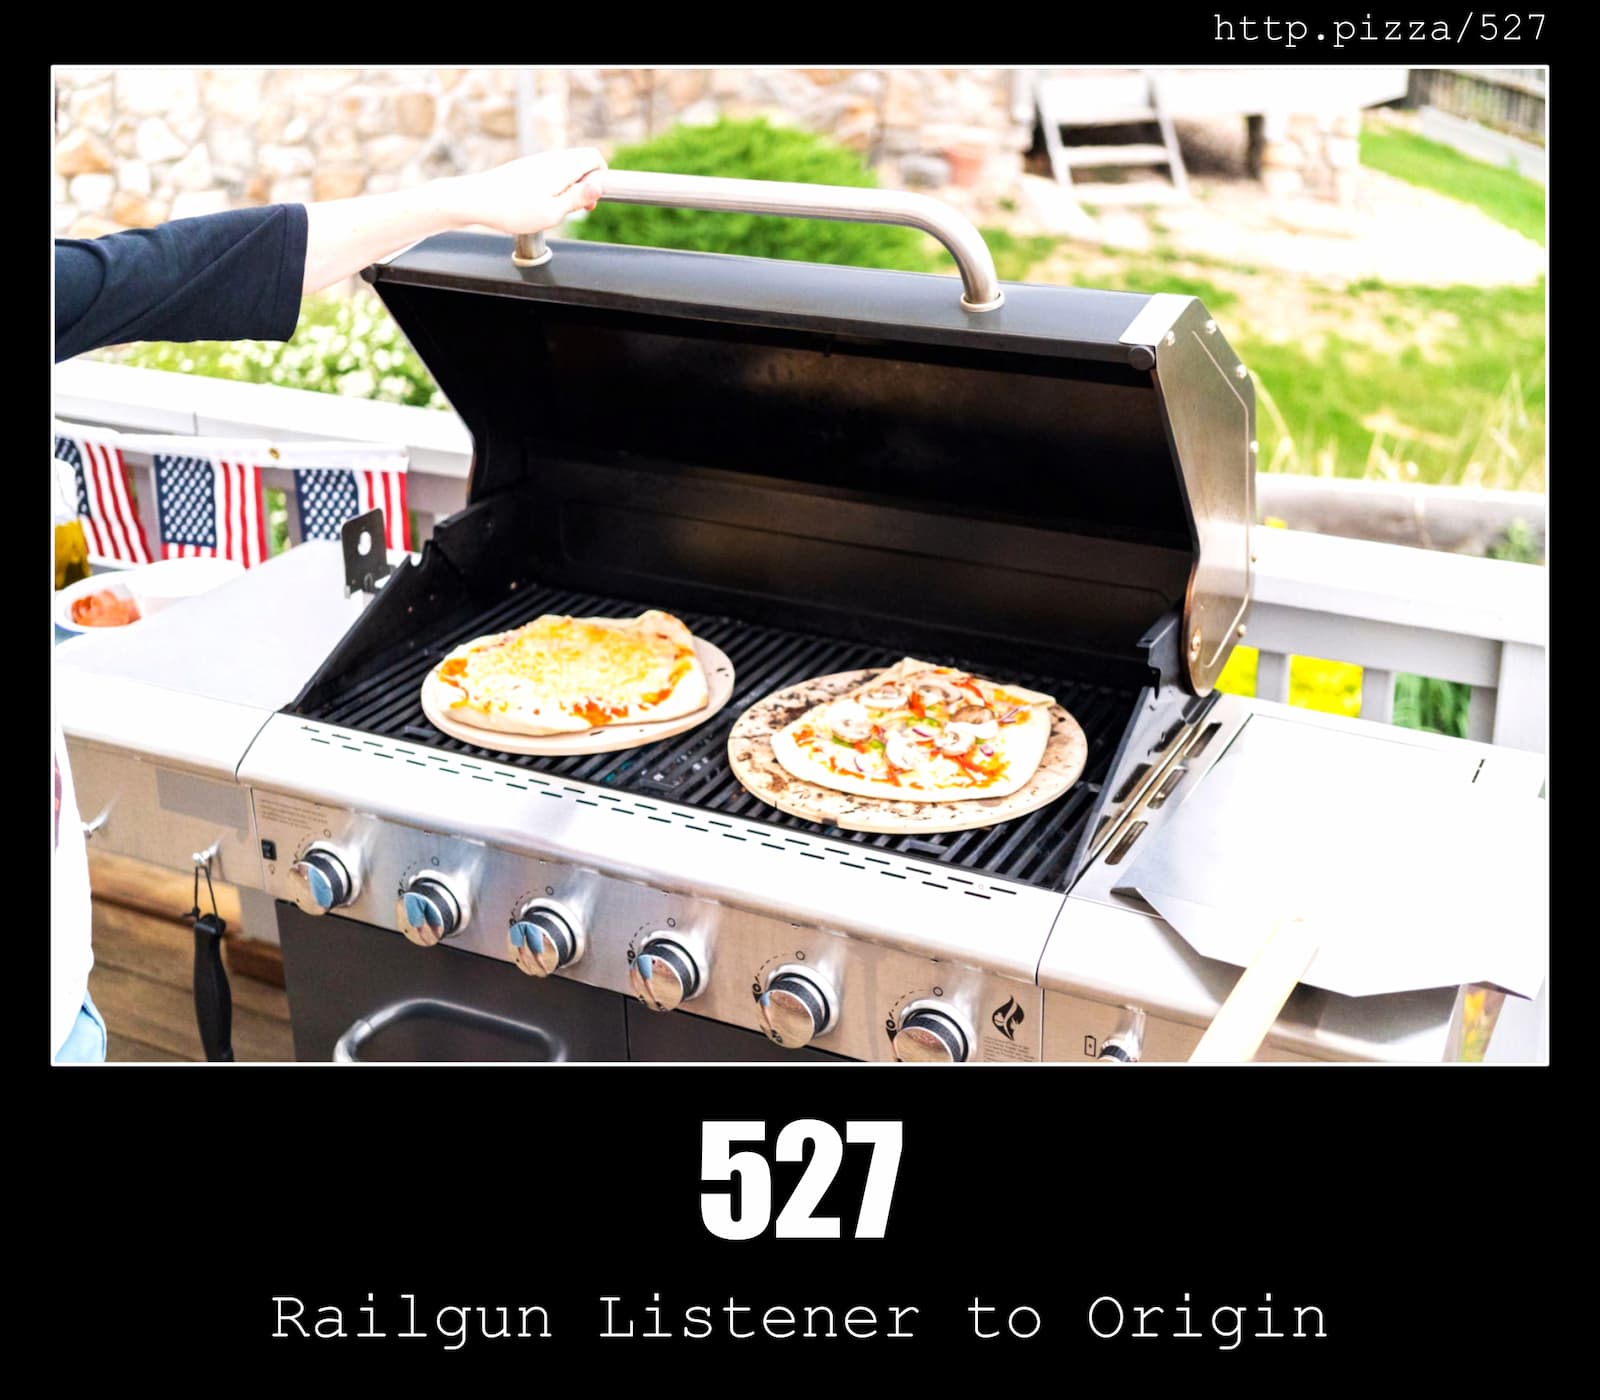 HTTP Status Code 527 Railgun Listener to Origin & Pizzas